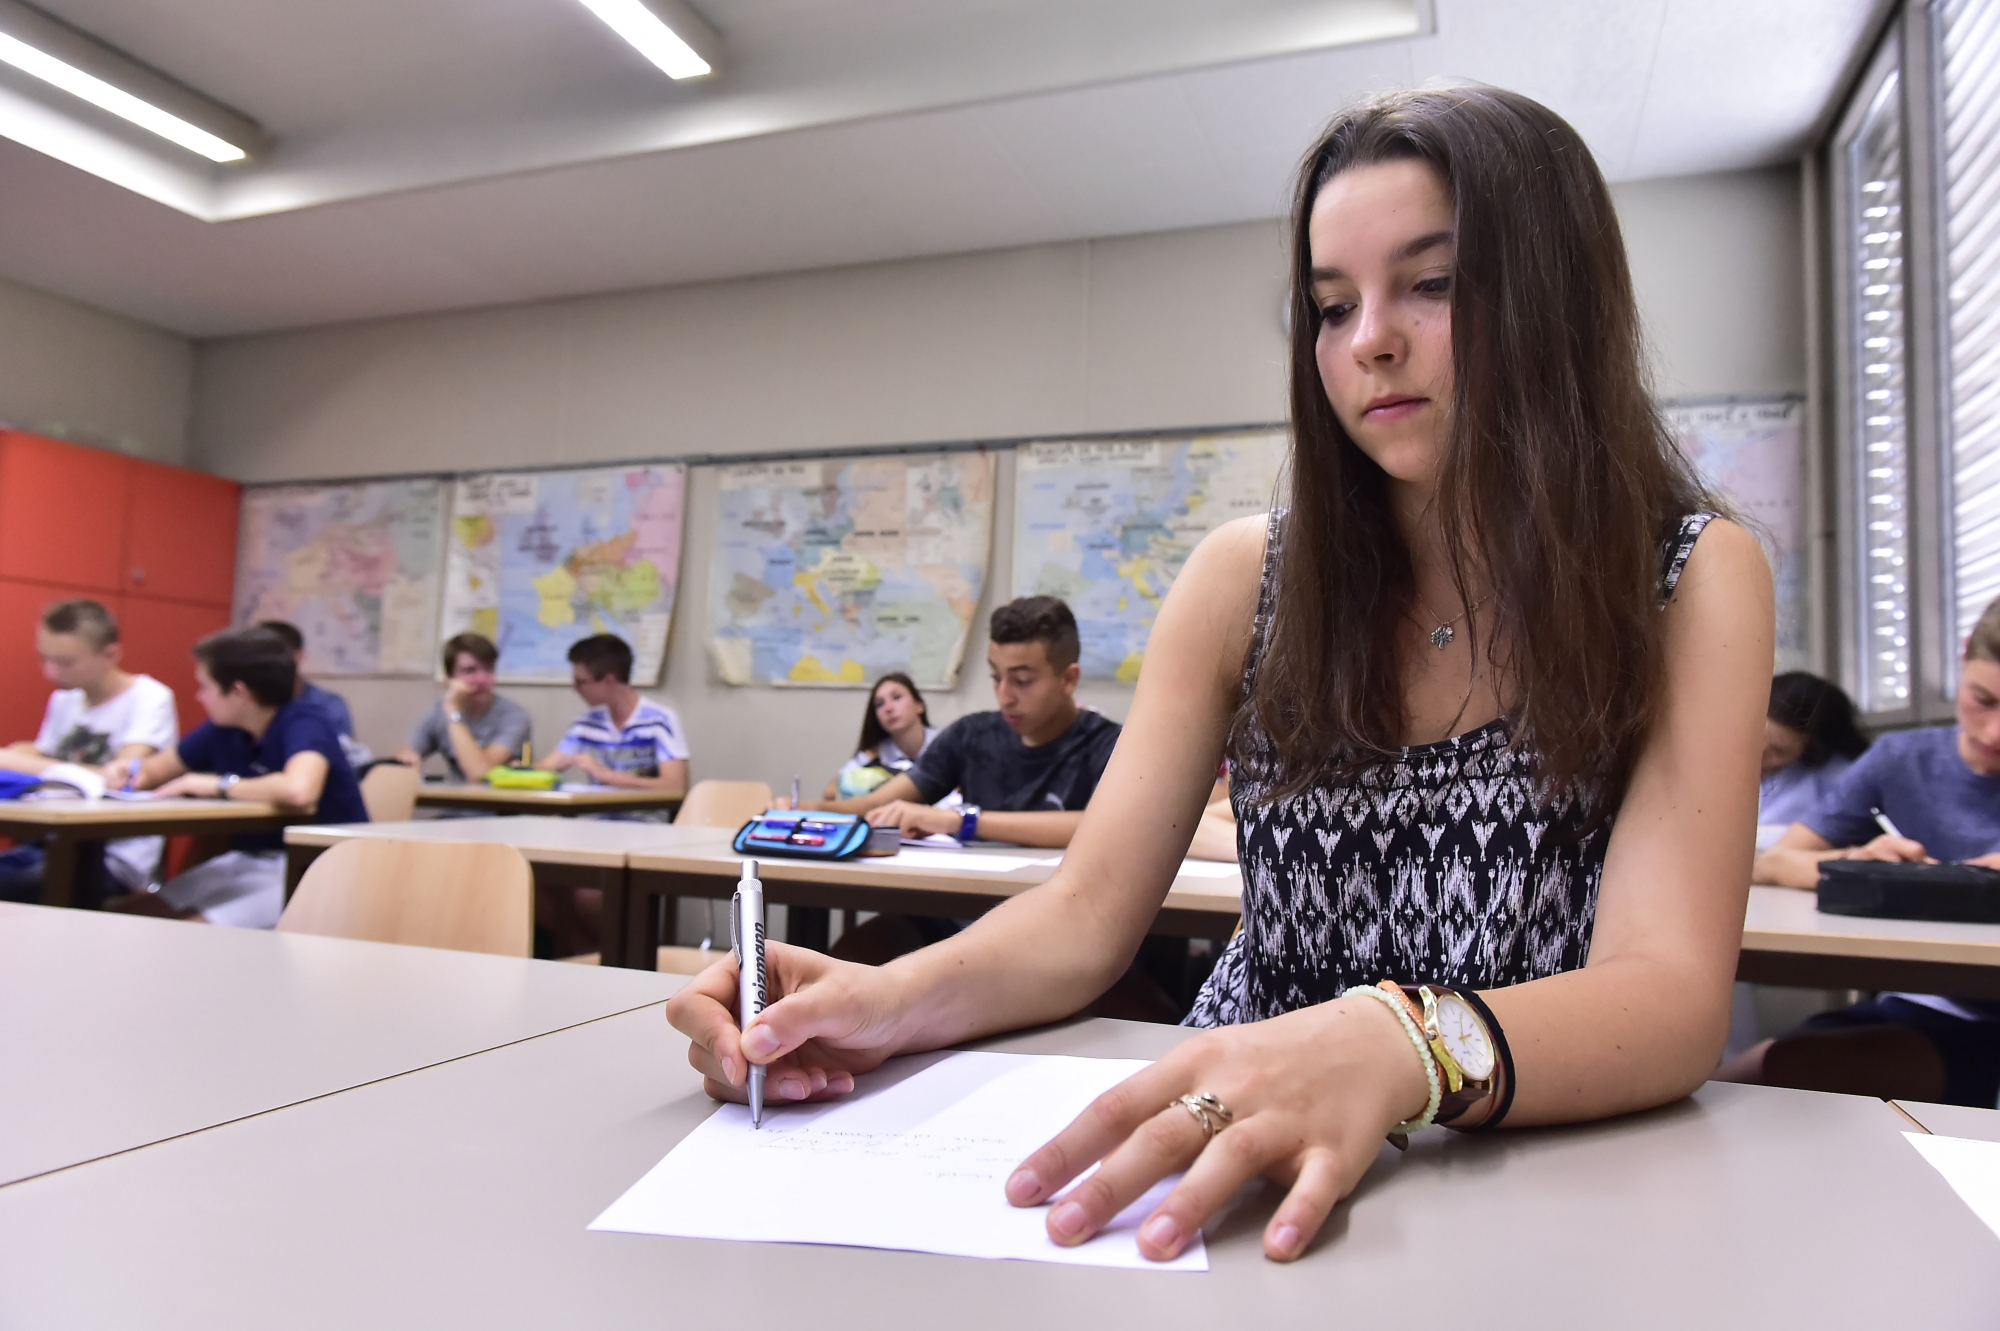 Comme Jessica Ruffiner, étudiante haut-valaisanne qui a décidé de passer une année en immersion au collège des Creusets, ils sont des dizaines à avoir commencé leur scolarité en terre linguistique (presque) inconnue.